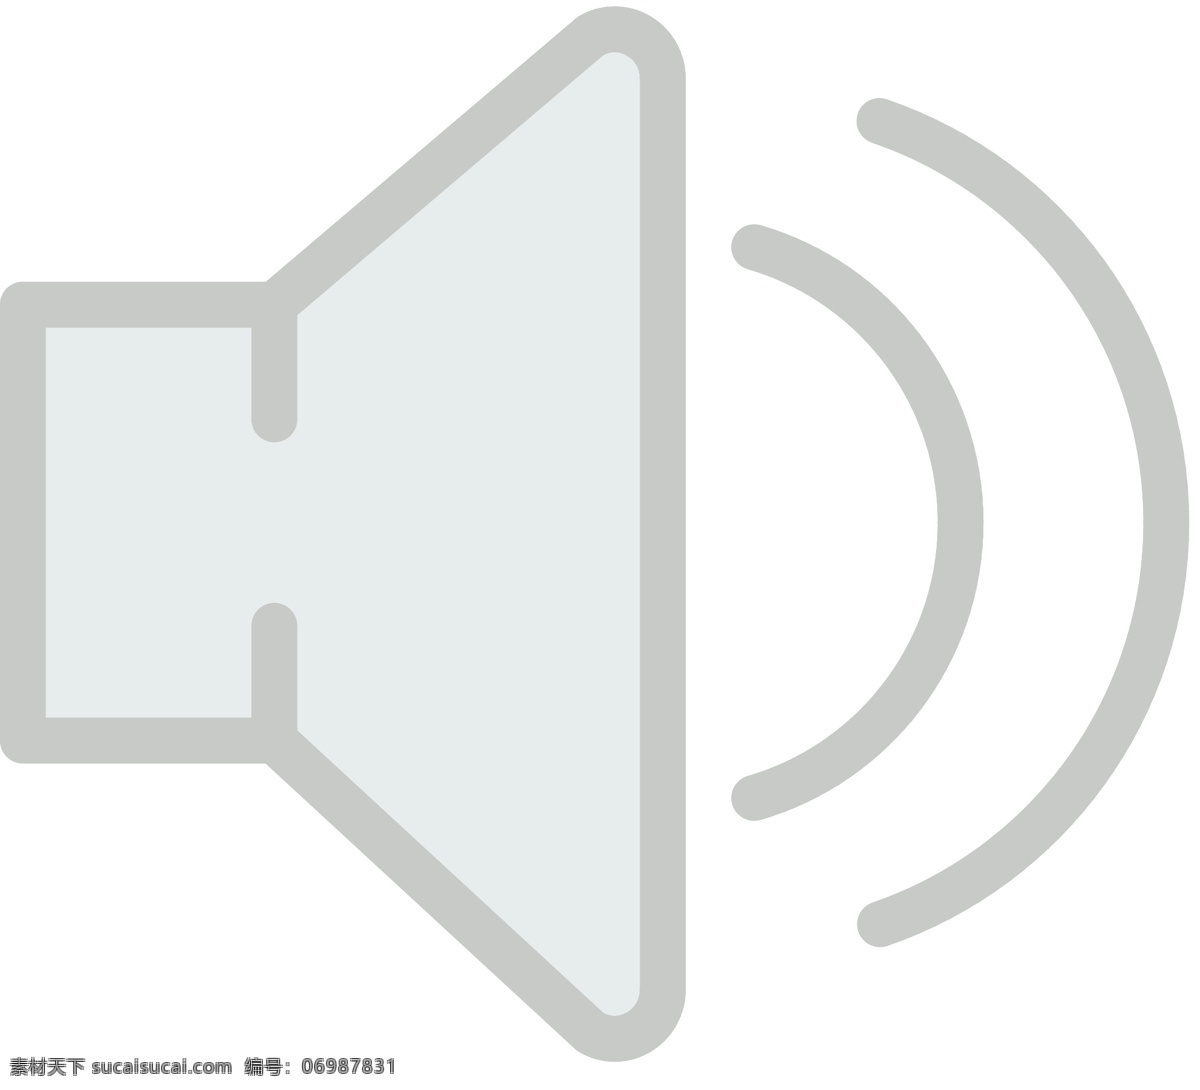 喇叭icon 音量 图标icon 音量调节 小喇叭 音量控制 音量大小 声音 音量图标